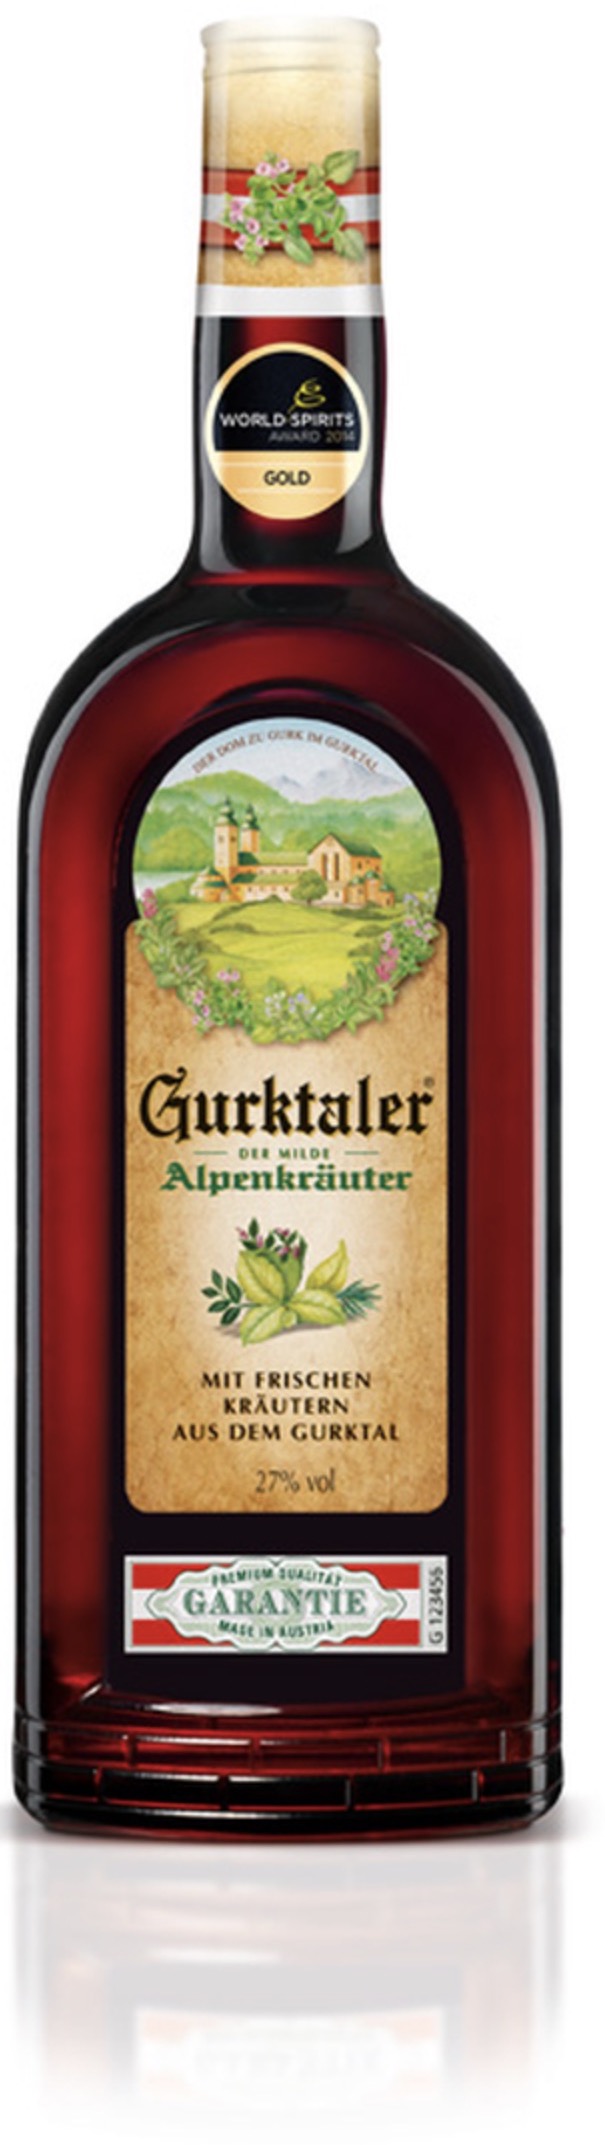 Gurktaler Alpenkräuter 27% vol. 0,7L